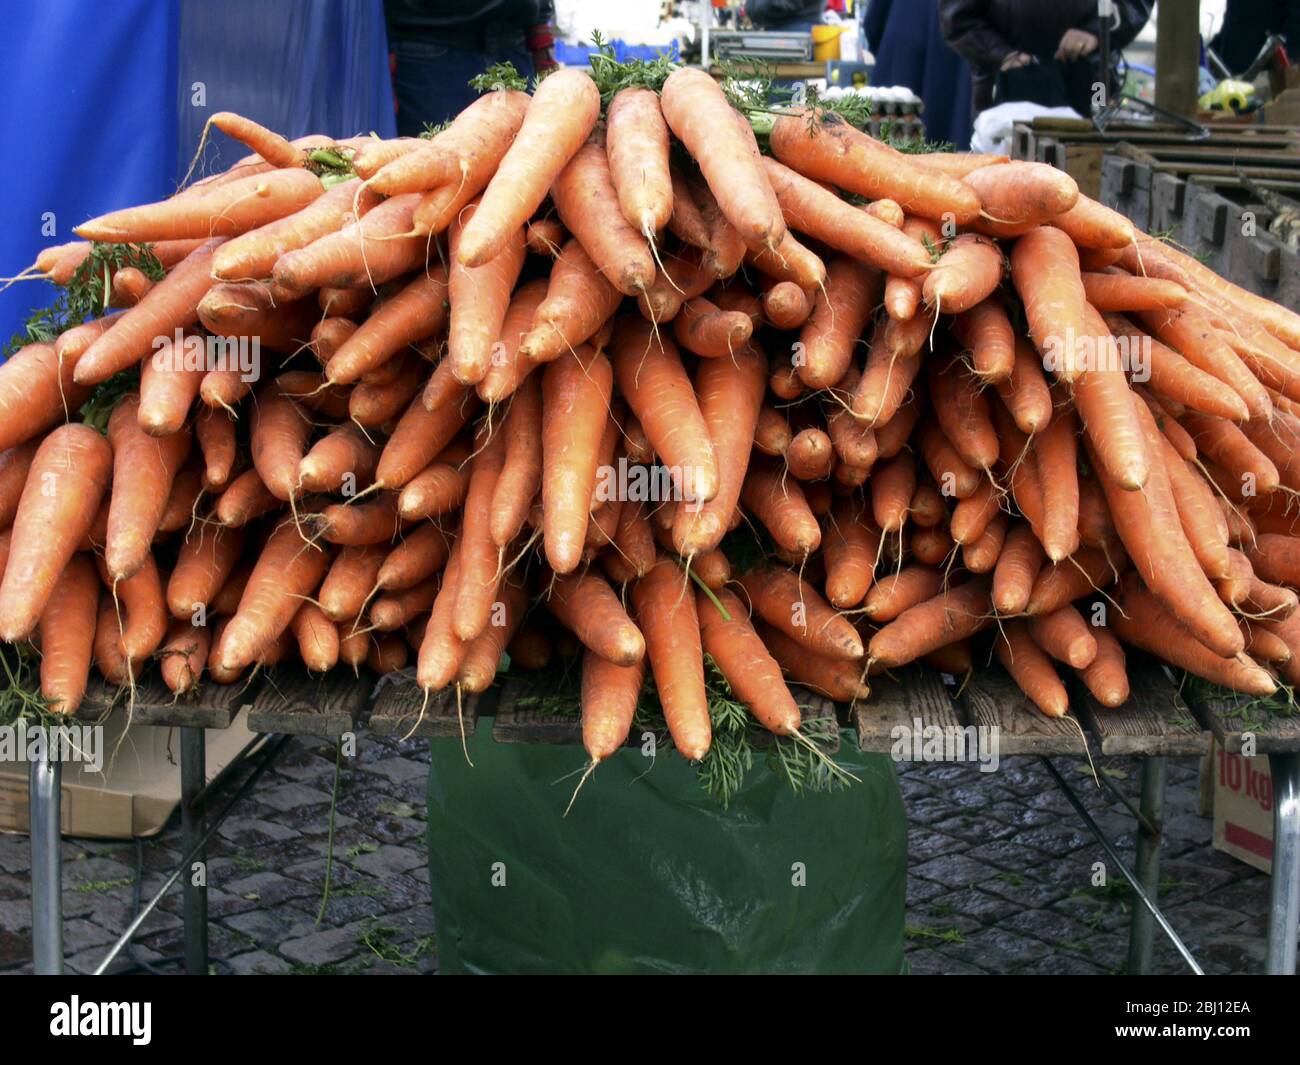 Une grande pile de carottes fraîchement creusées à vendre sur une table du marché de Varberg, octobre. Suède - Banque D'Images